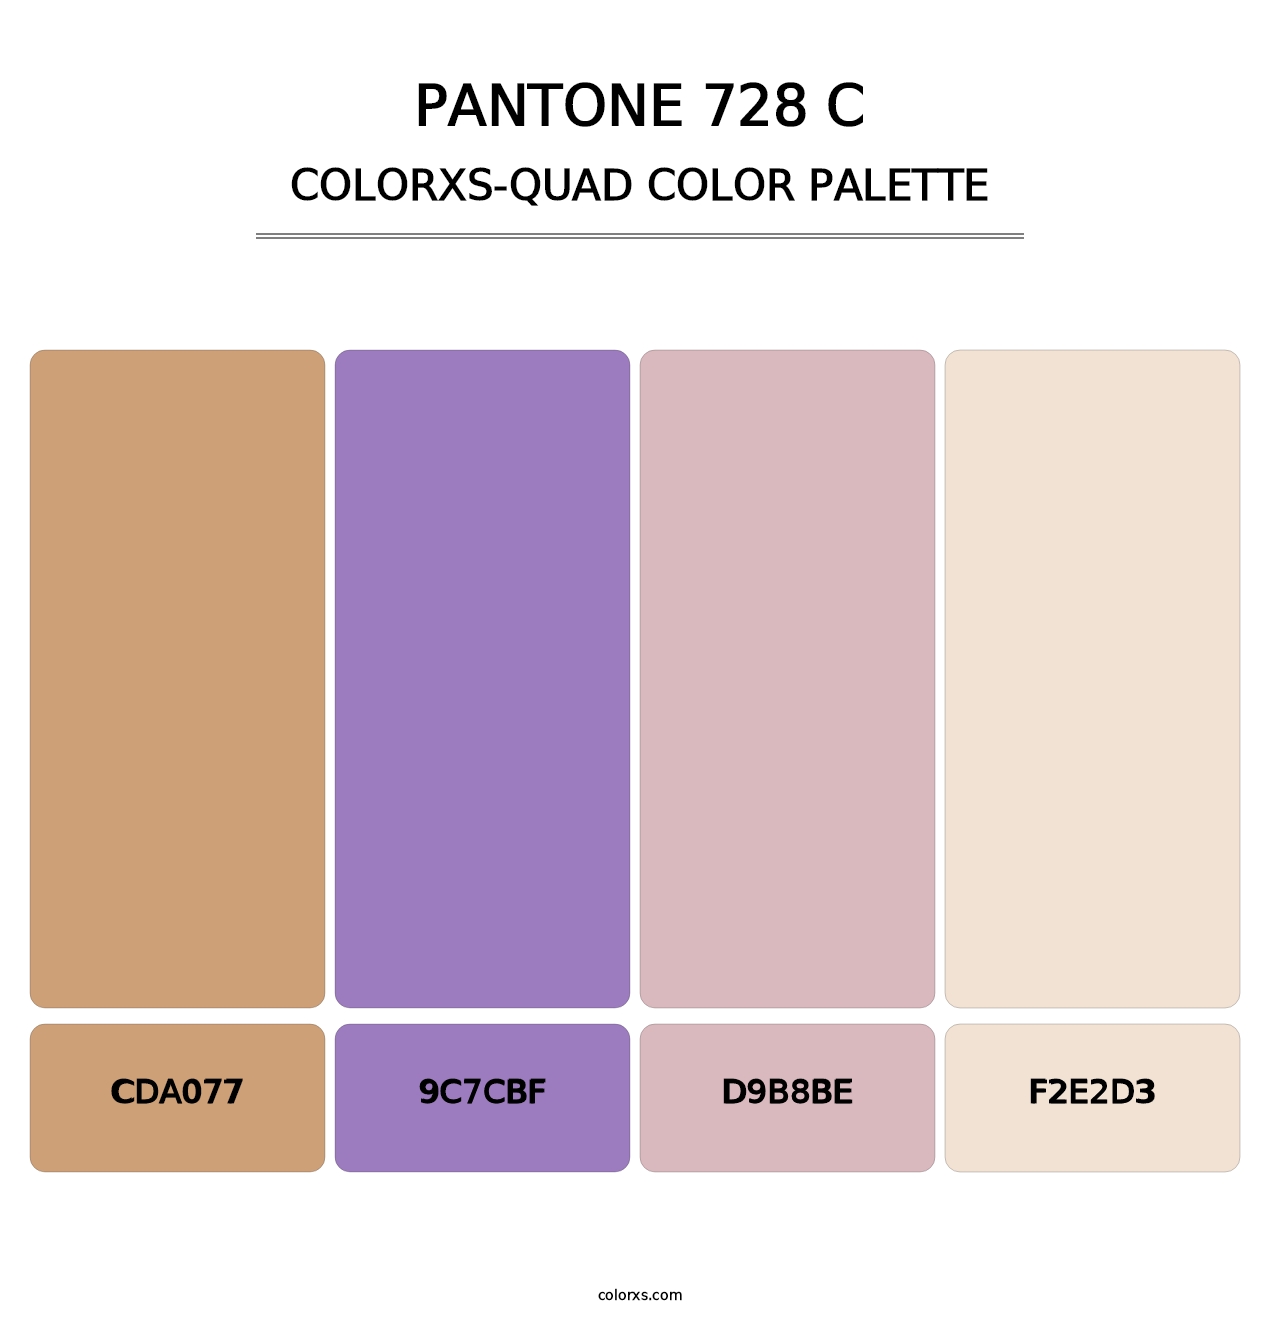 PANTONE 728 C - Colorxs Quad Palette